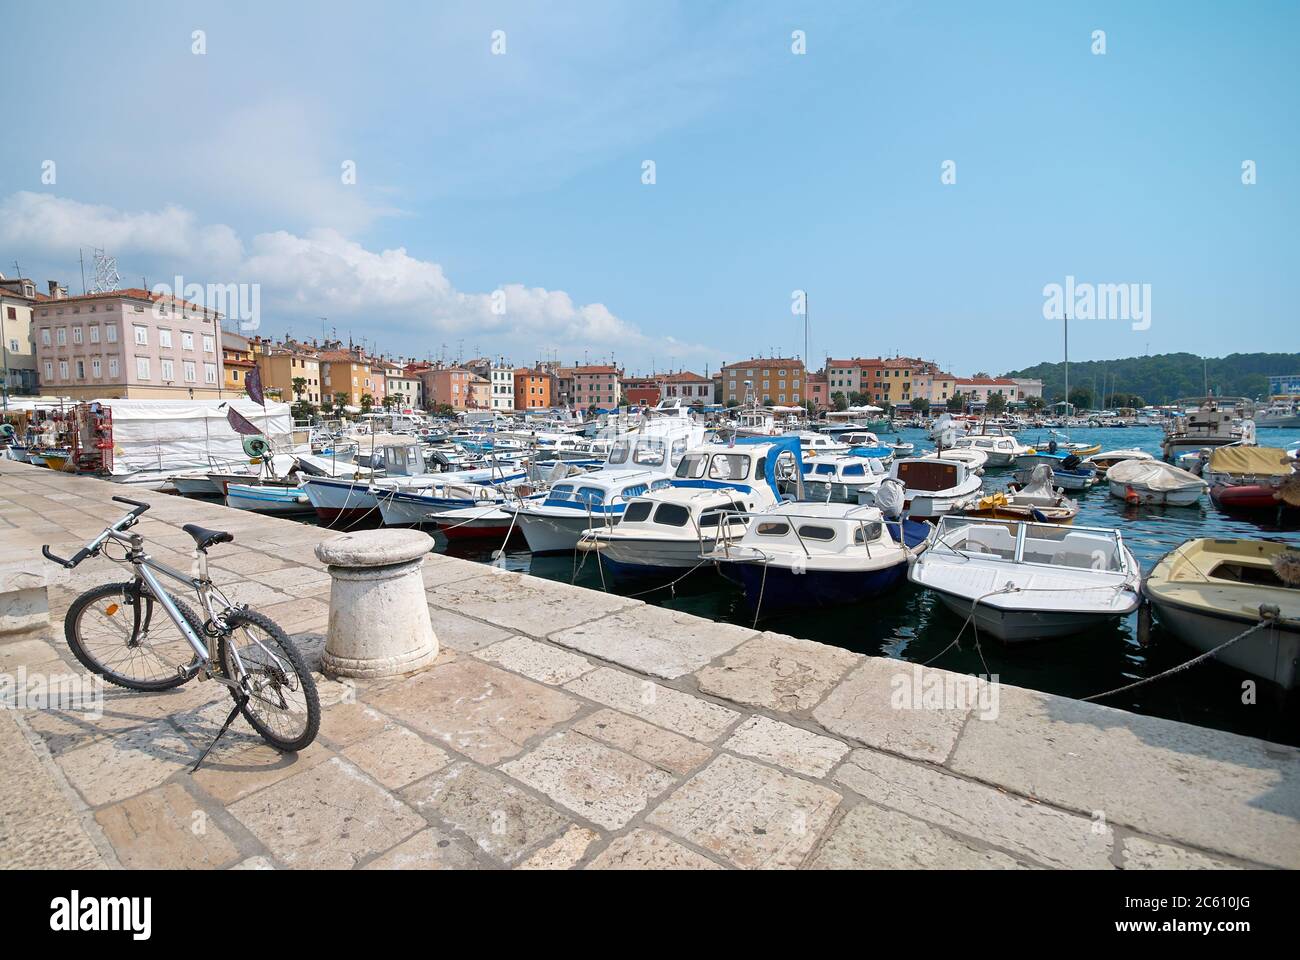 Le vélo est stationné sur la jetée du port de Rovinj, en Croatie. Yachts débarquant, bateaux à moteur et bateaux sur l'eau, maisons médiévales anciennes de la vieille ville sur le b Banque D'Images